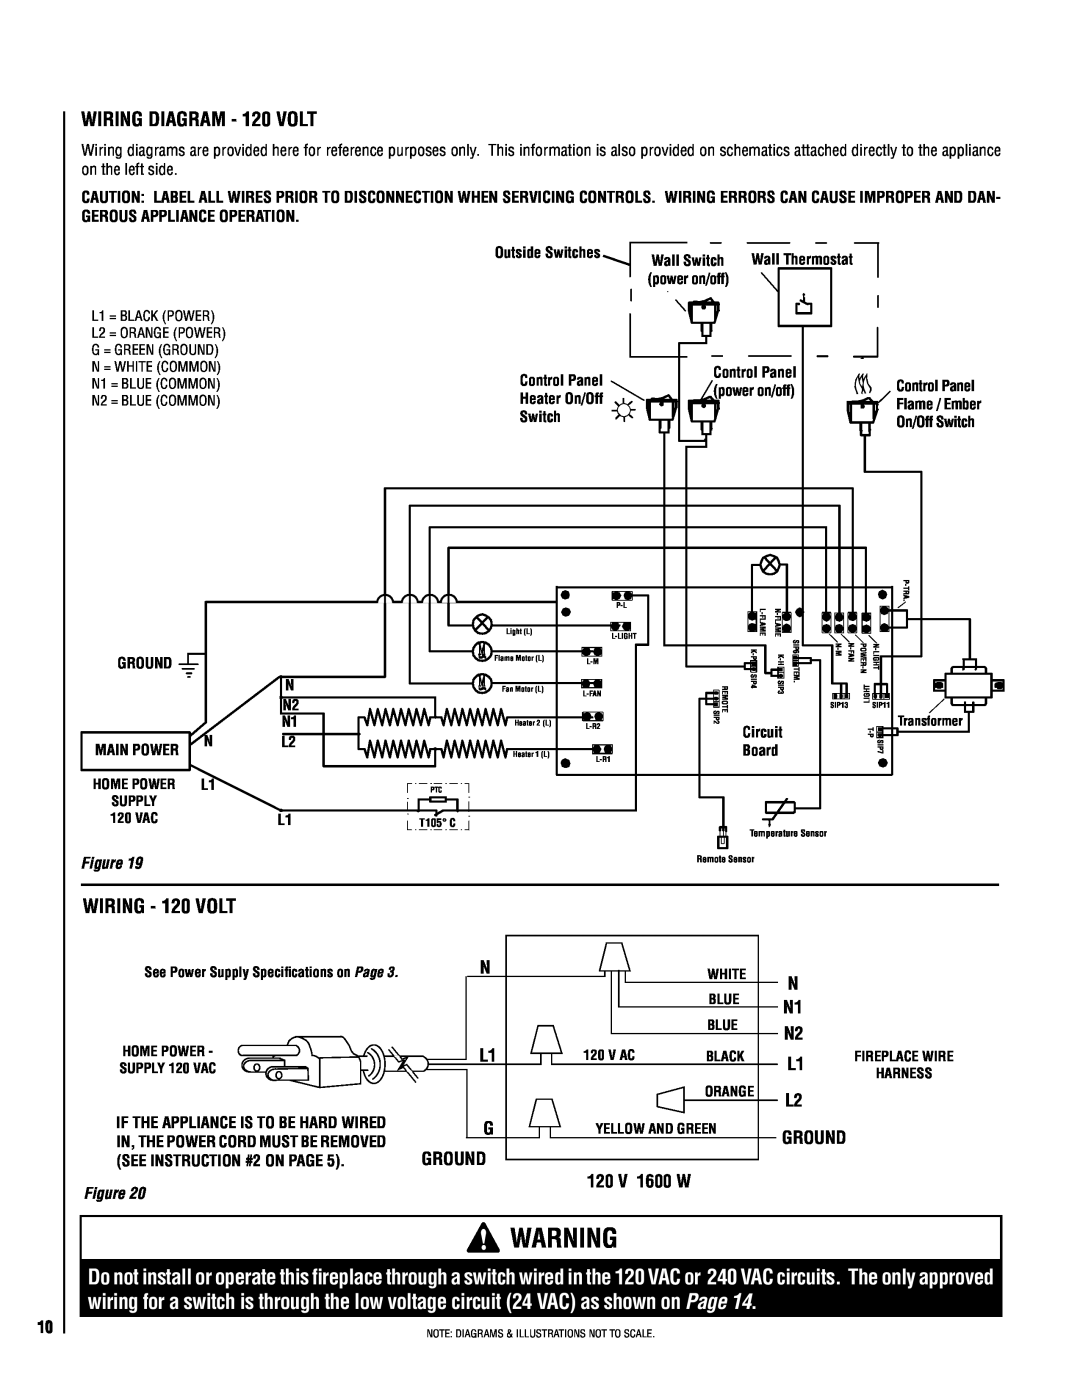 Lucent Technologies MPE-33R warranty Wiring Diagram - 120 volt, WIRING - 120 volt, ground, 120 v 1600 w 